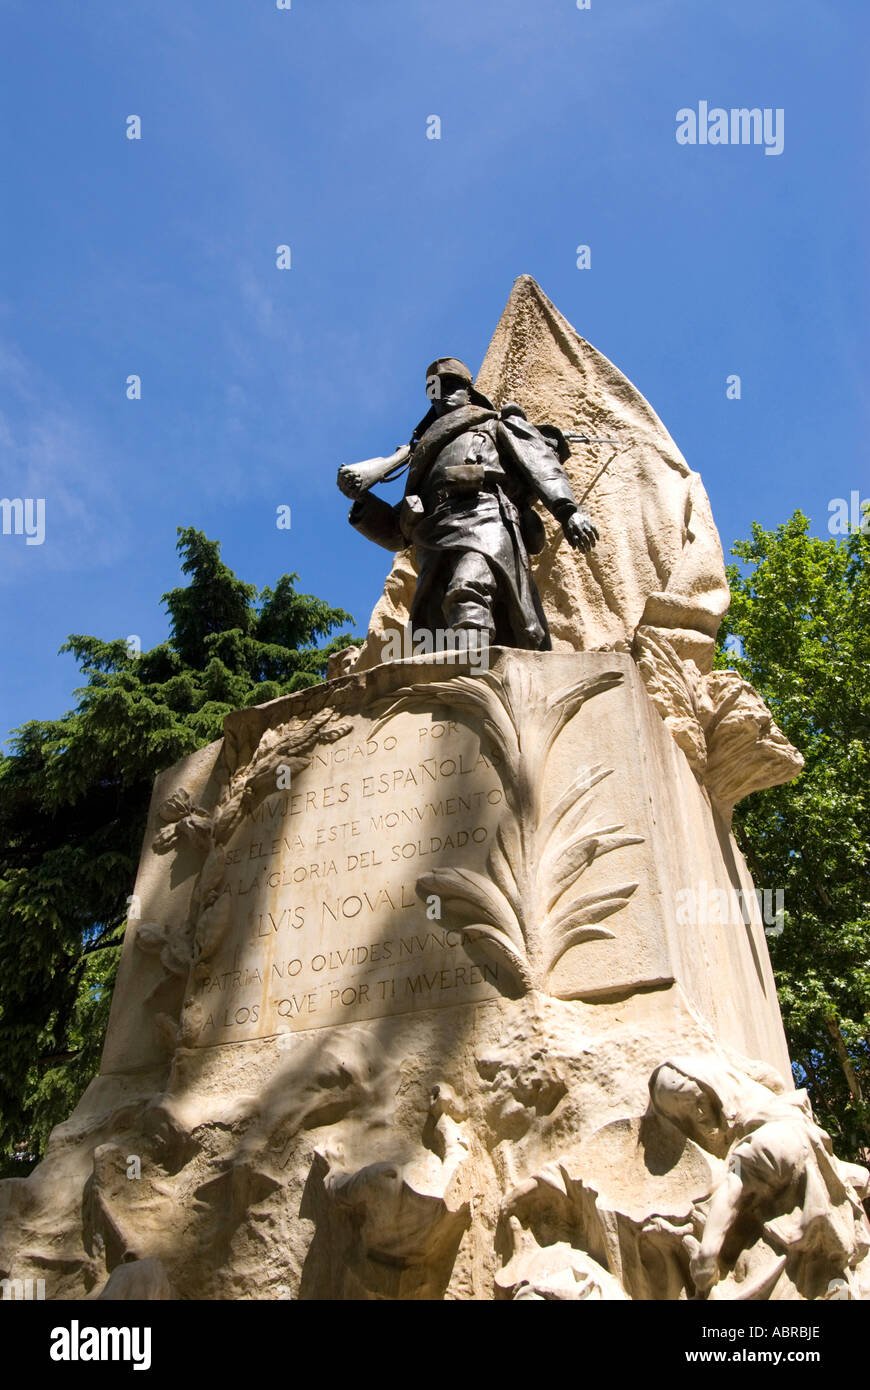 Denkmal für Luis Noval durch die Gruppe Mujeres Espanolas in einem Park in der Nähe des Palacio Real oder Royal Palace Madrid Spanien Stockfoto